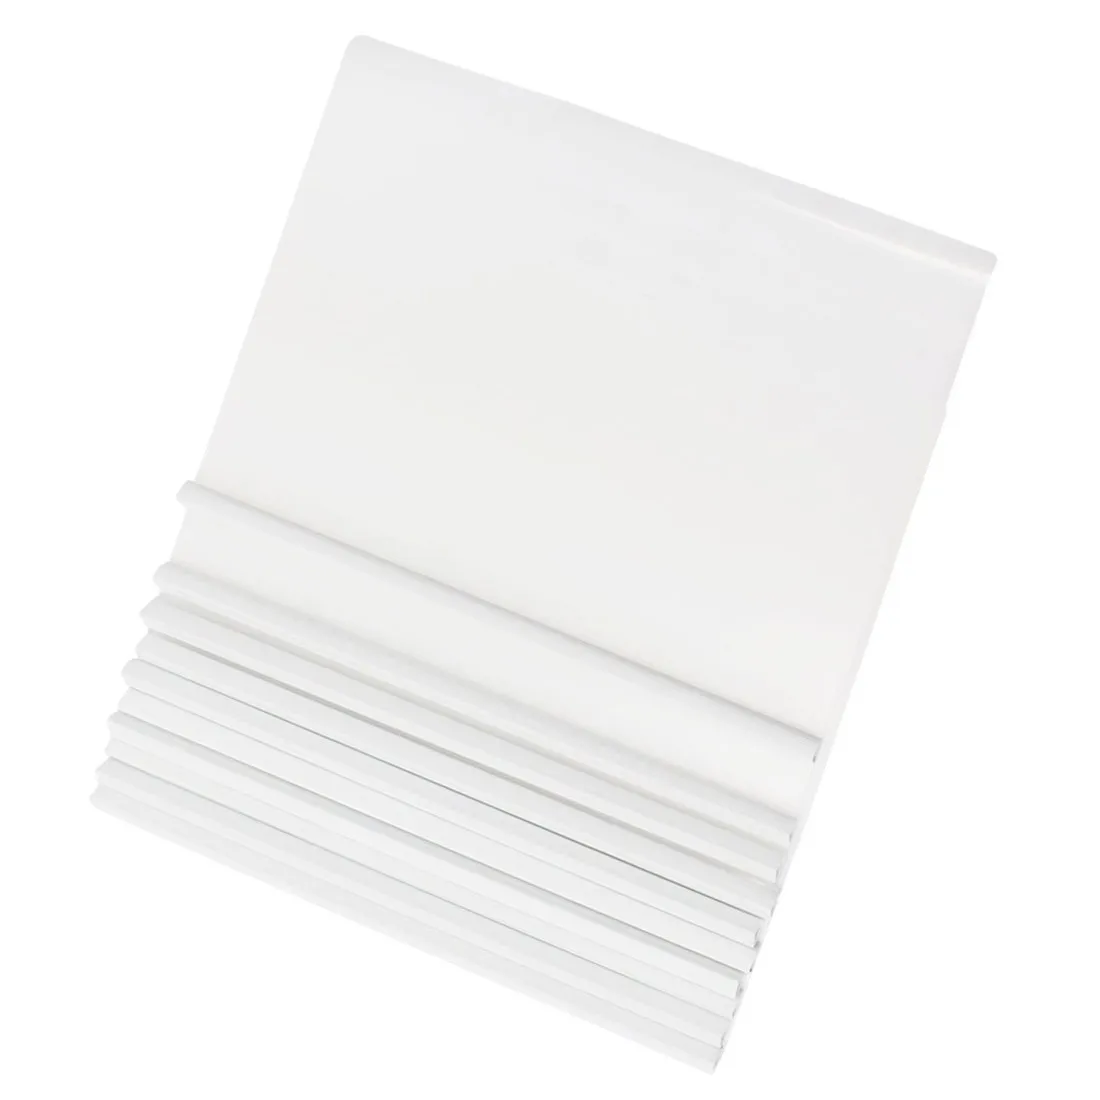 10 шт белый пластиковый раздвижной бар файл папка для A4 бумаги отчет